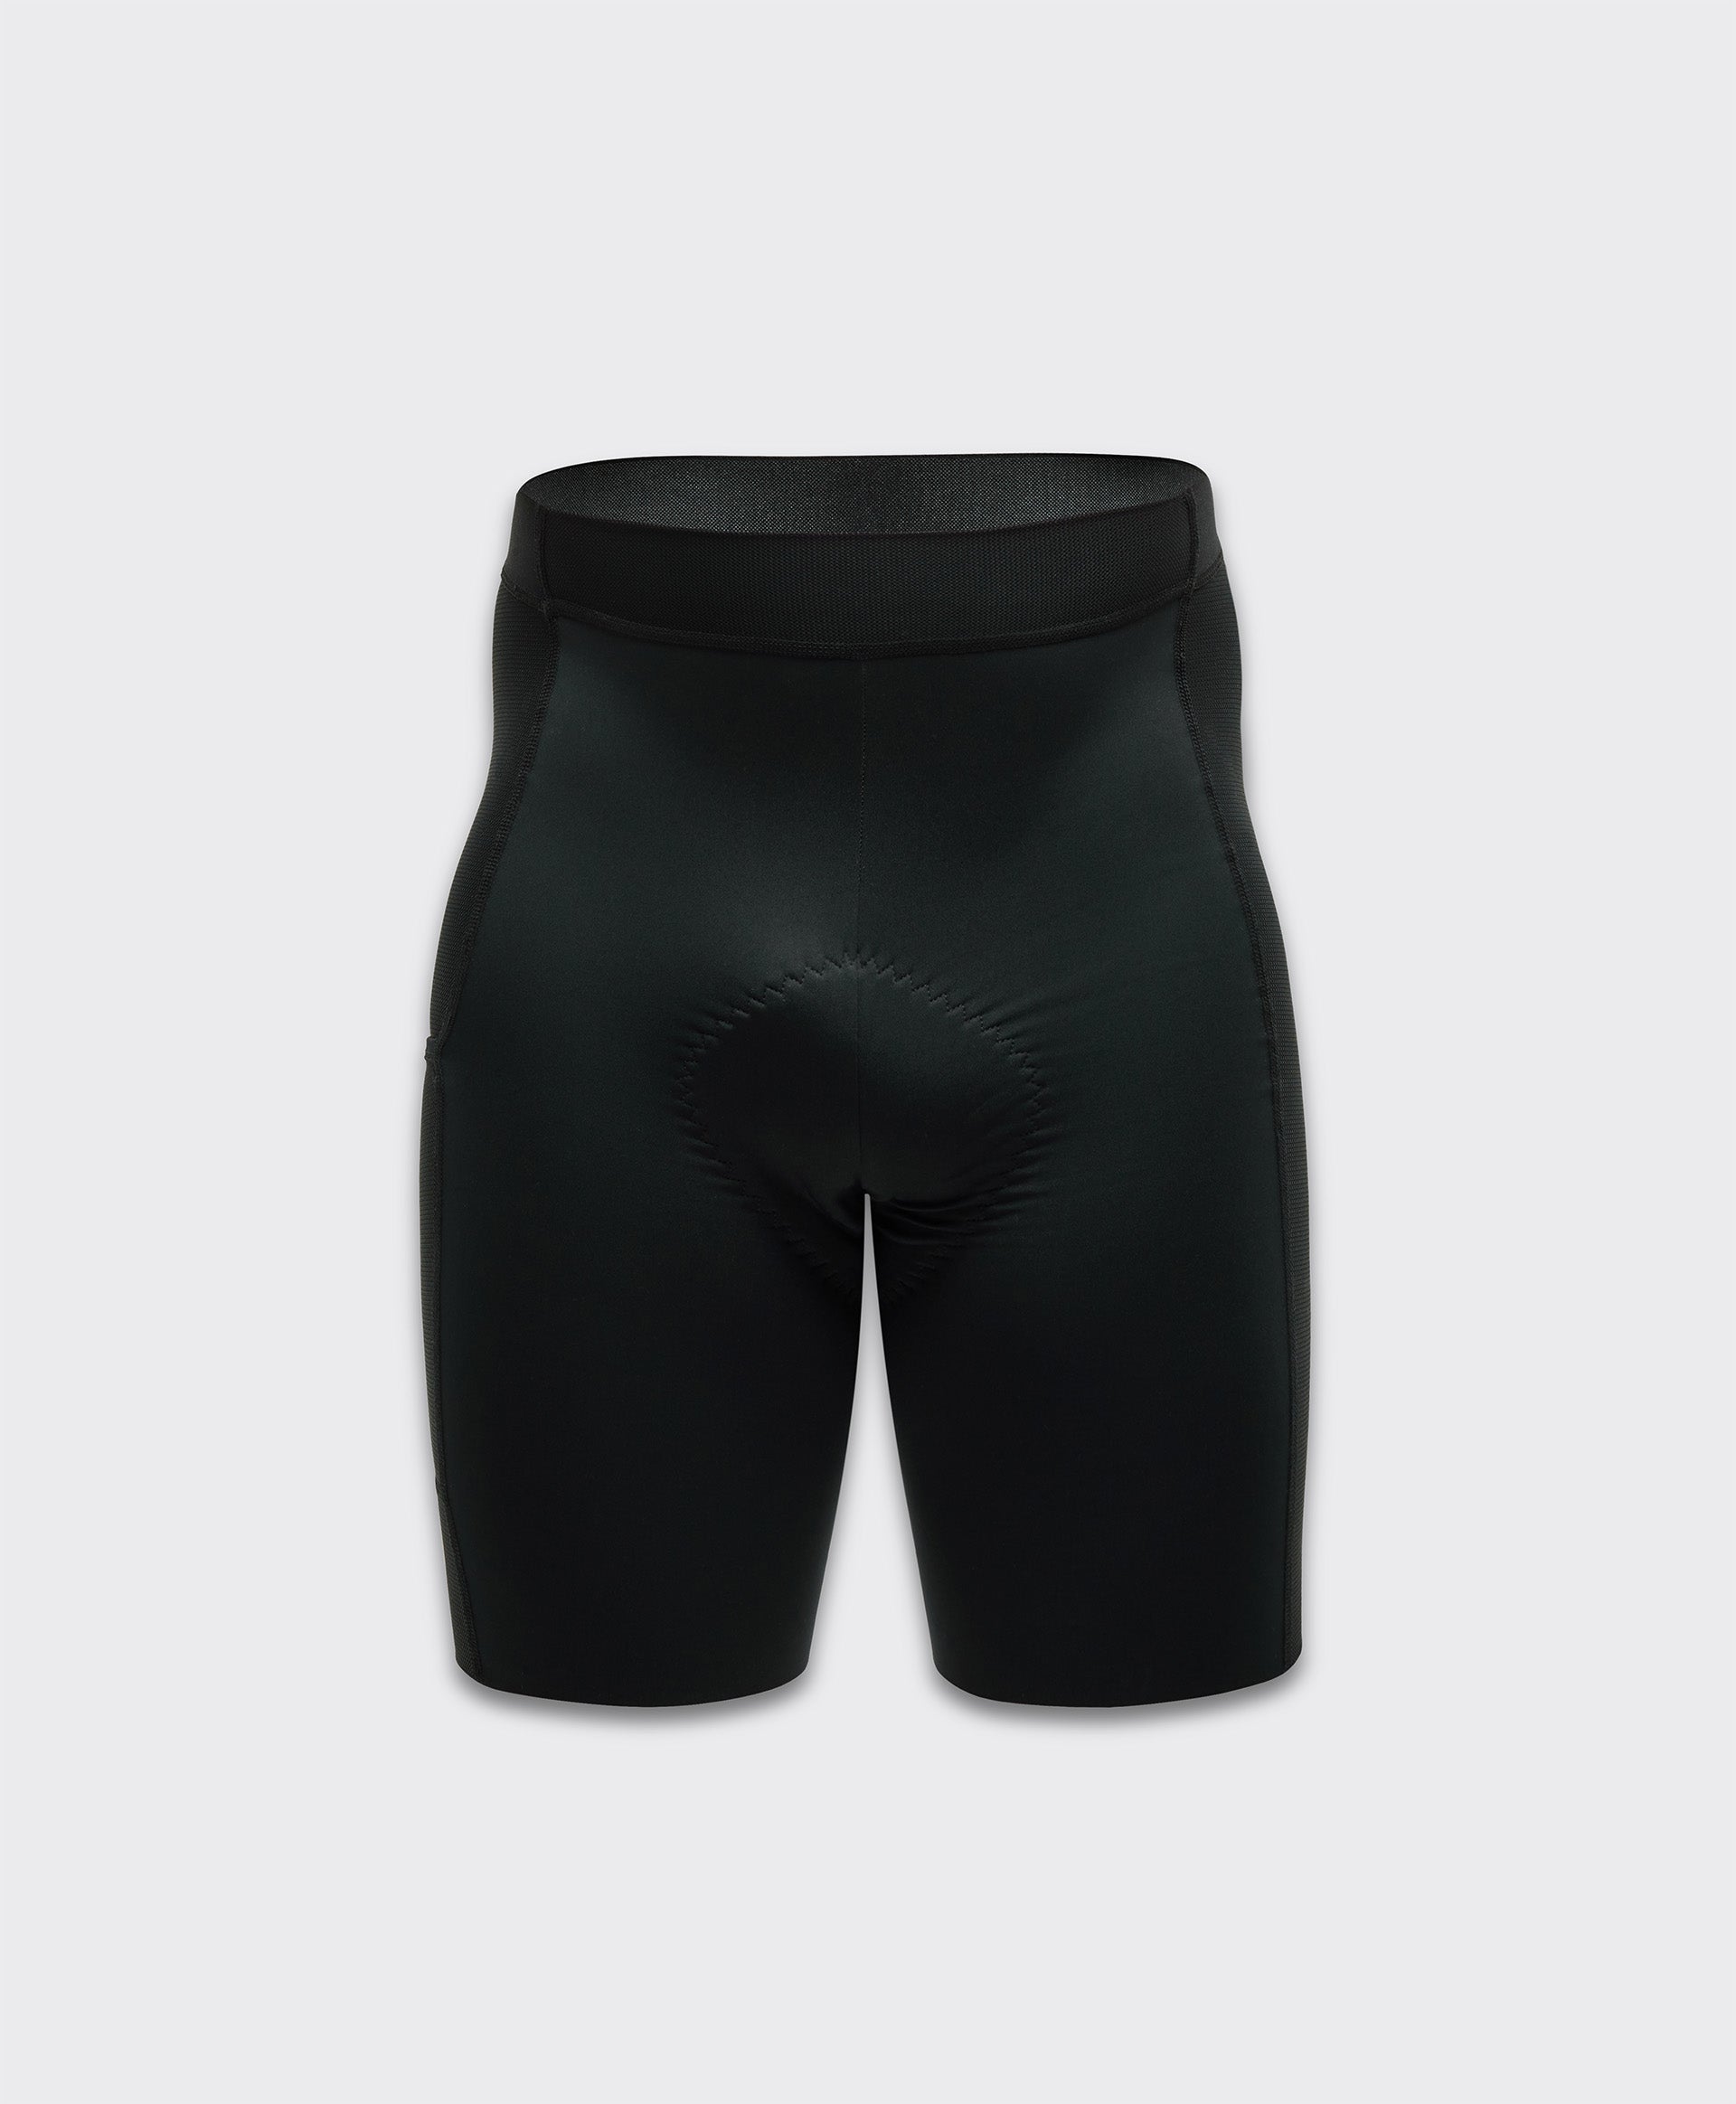 Simpli Under Shorts - Homme